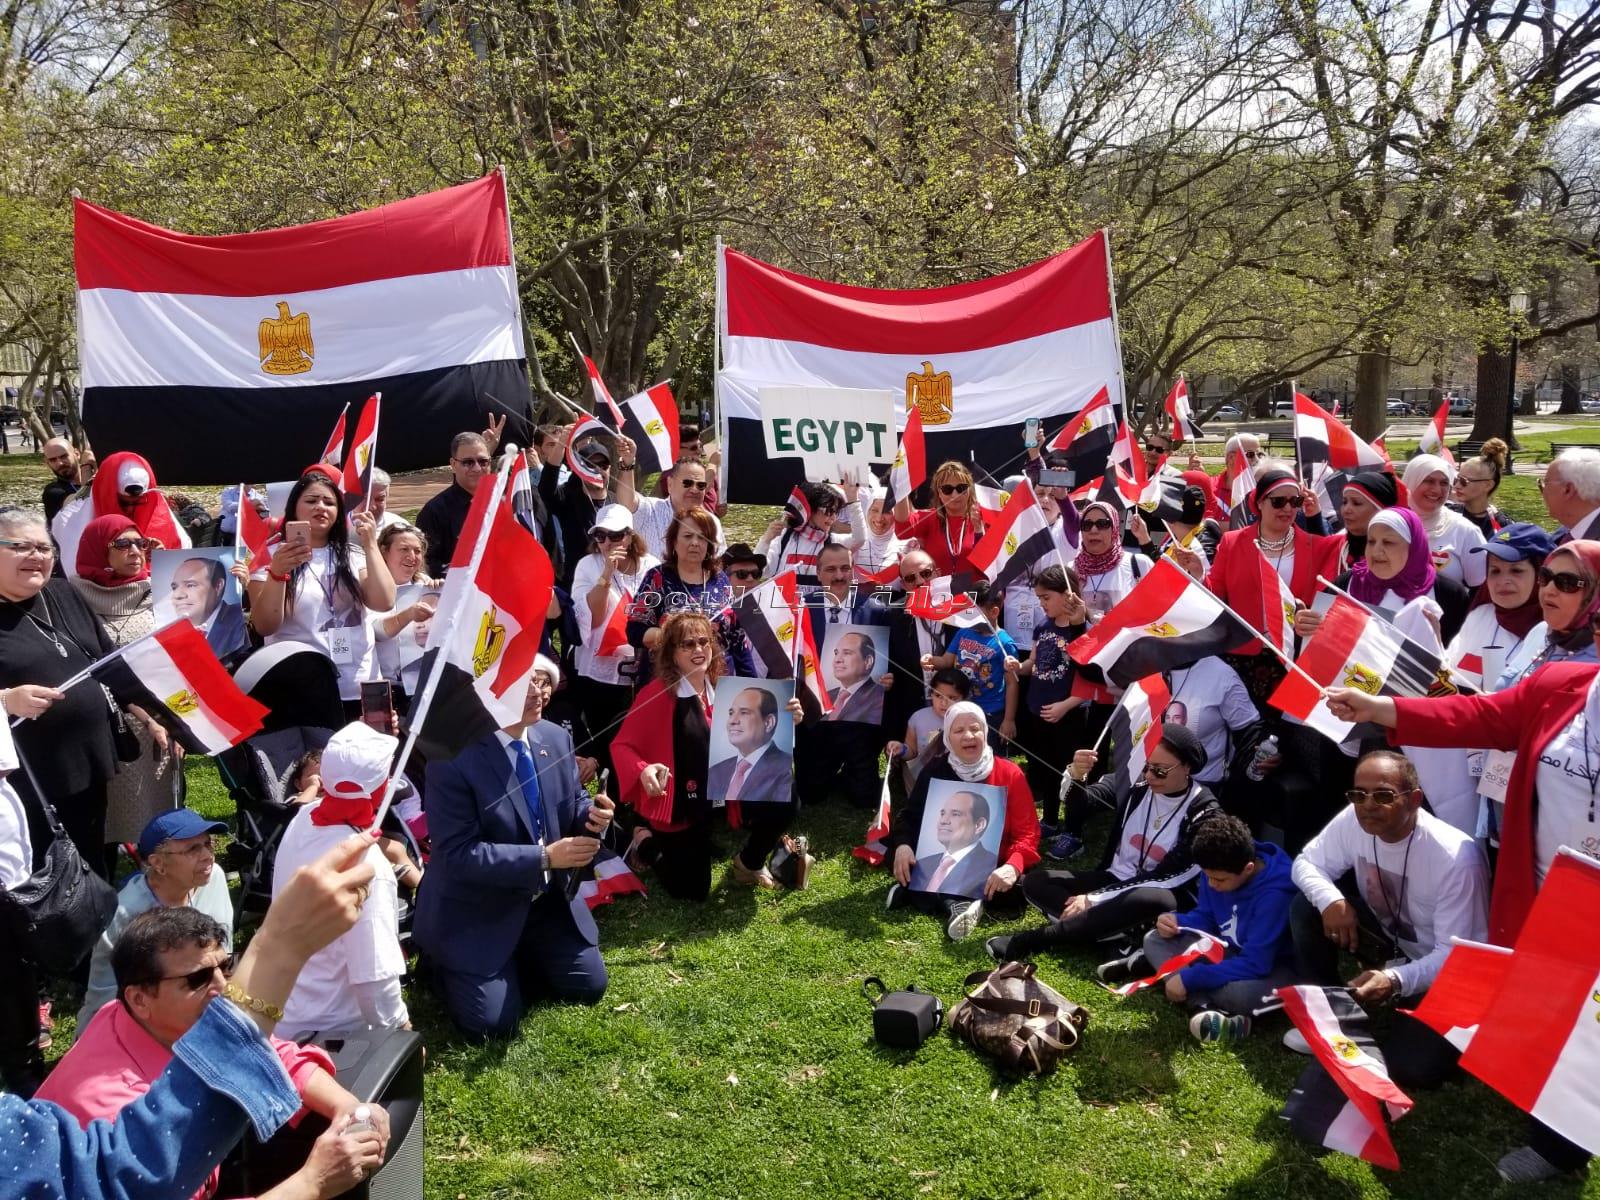 المصريين يردوا بقوة على محاولات الاخوان البائسة للاستقواء بالكونجرس ضد مصر